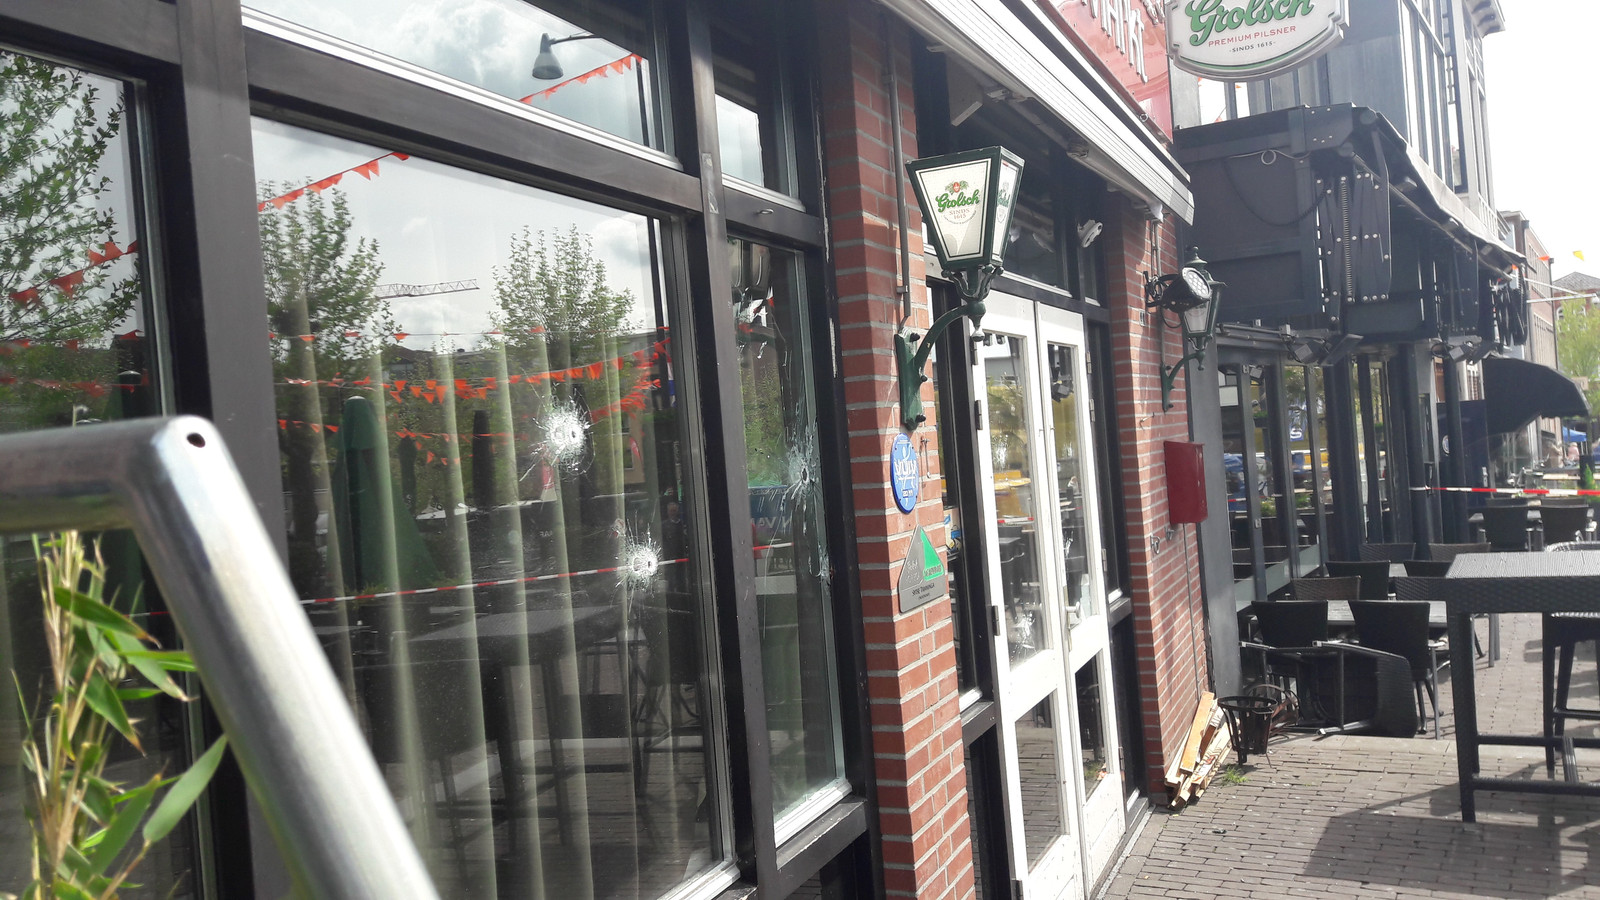 Café in Veenendaal beschoten.